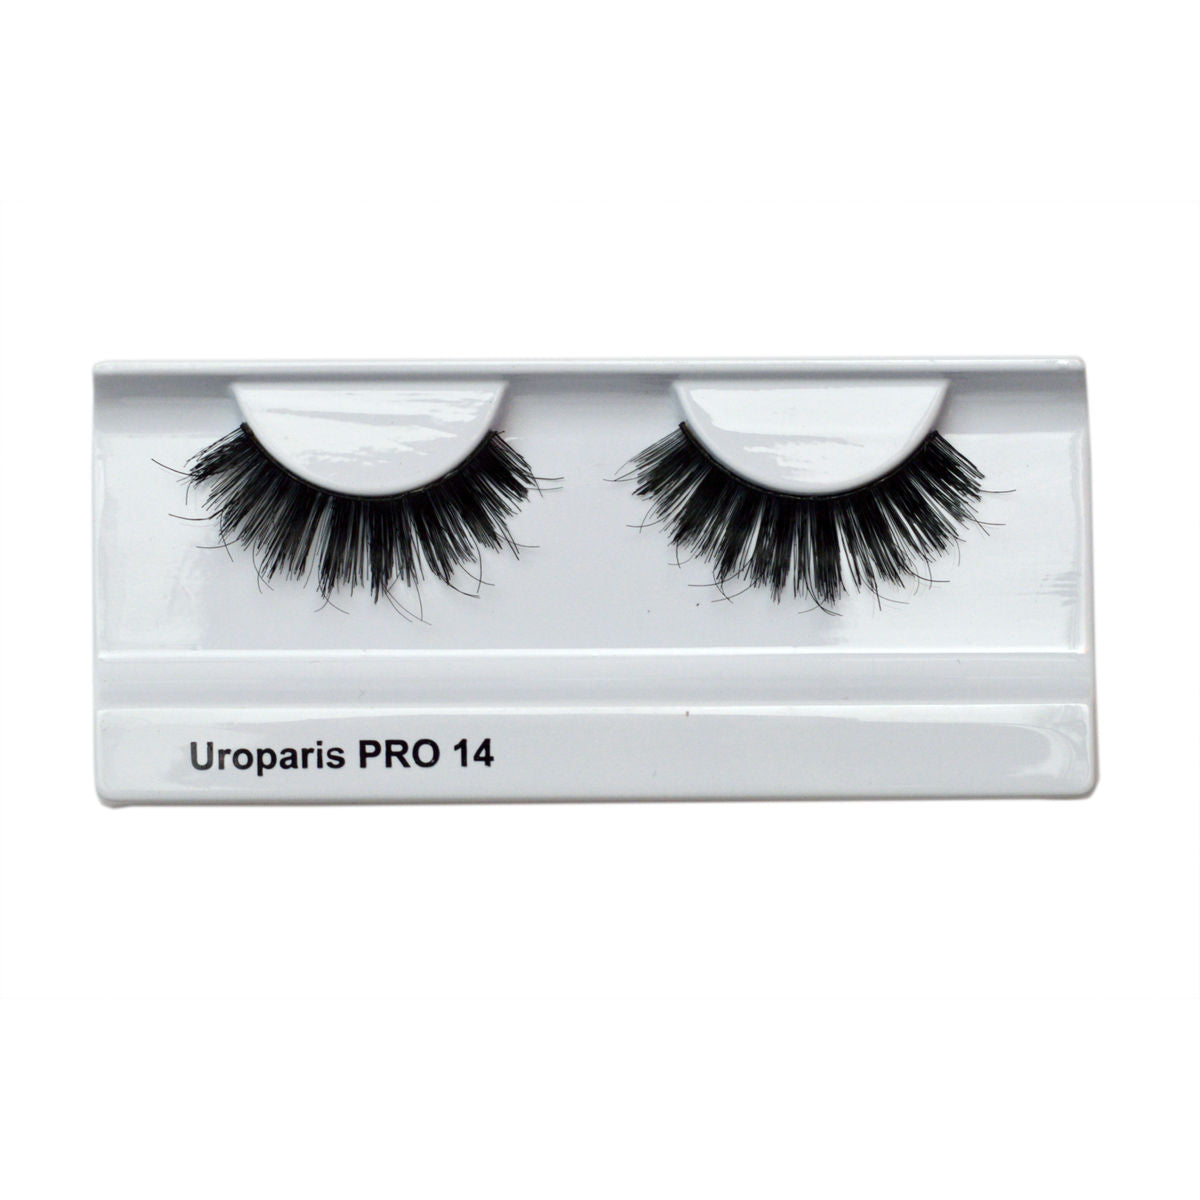 Uroparis Human Hair Eyelashes Pro 14 Black 3 D (1 pair) Uroparis